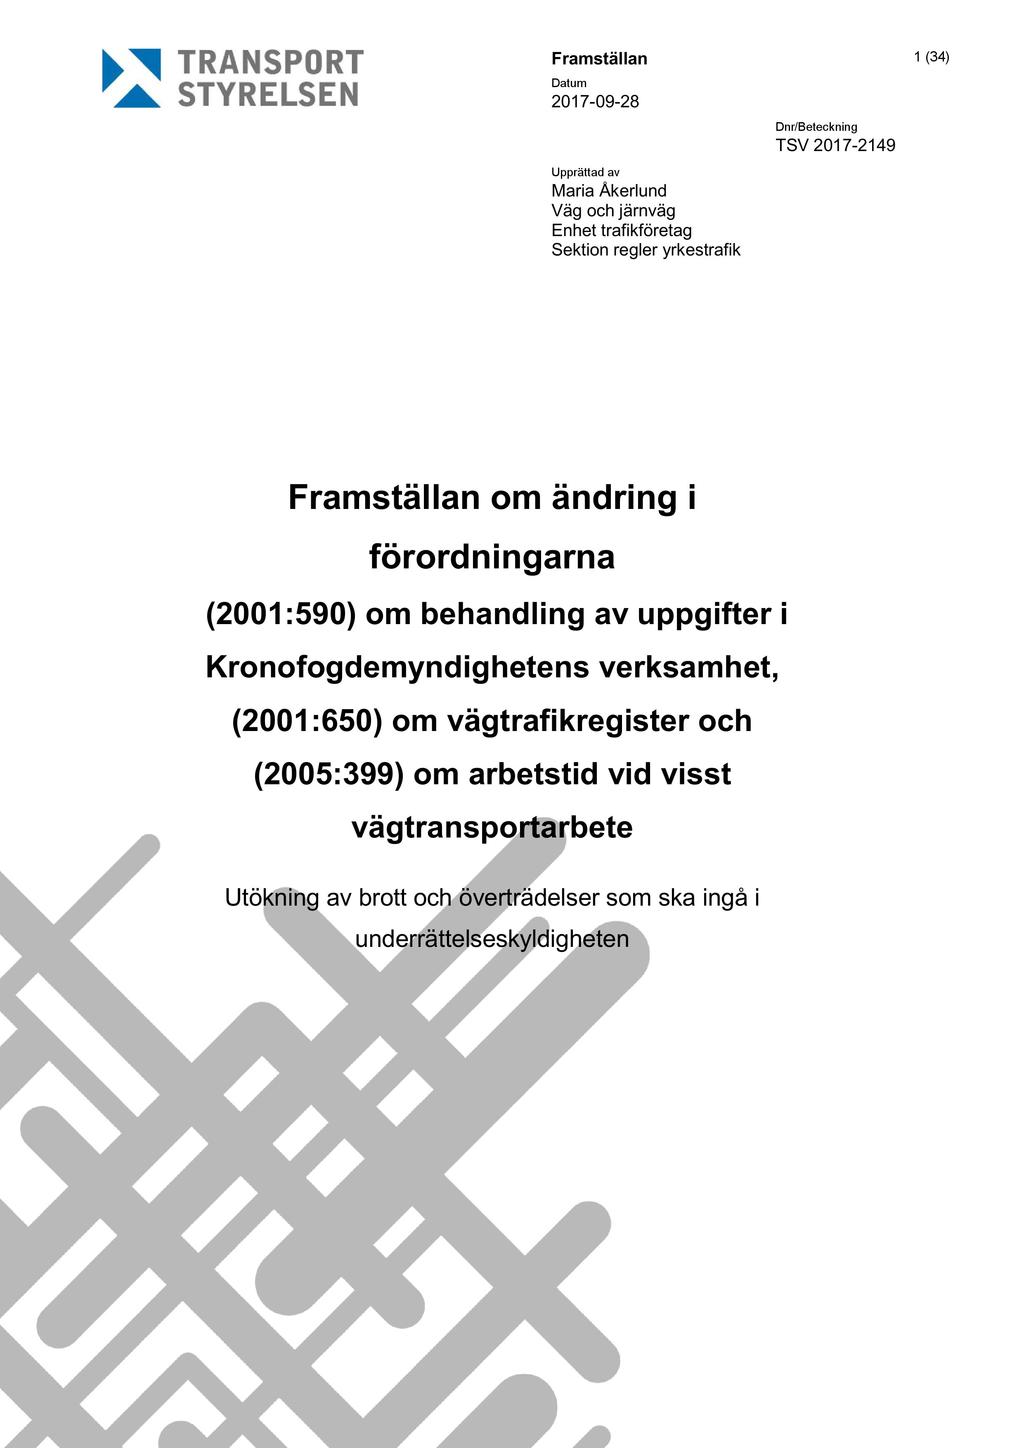 Framställan 1 ( 34 ) 2017-09 - 2 8 Upprättad av Maria Åkerlund Väg och järnväg Enhet trafikföretag Sektion regler yrkestrafik Dnr/Beteckning TSV 2017-2149 Framställan om ändring i förordning arna